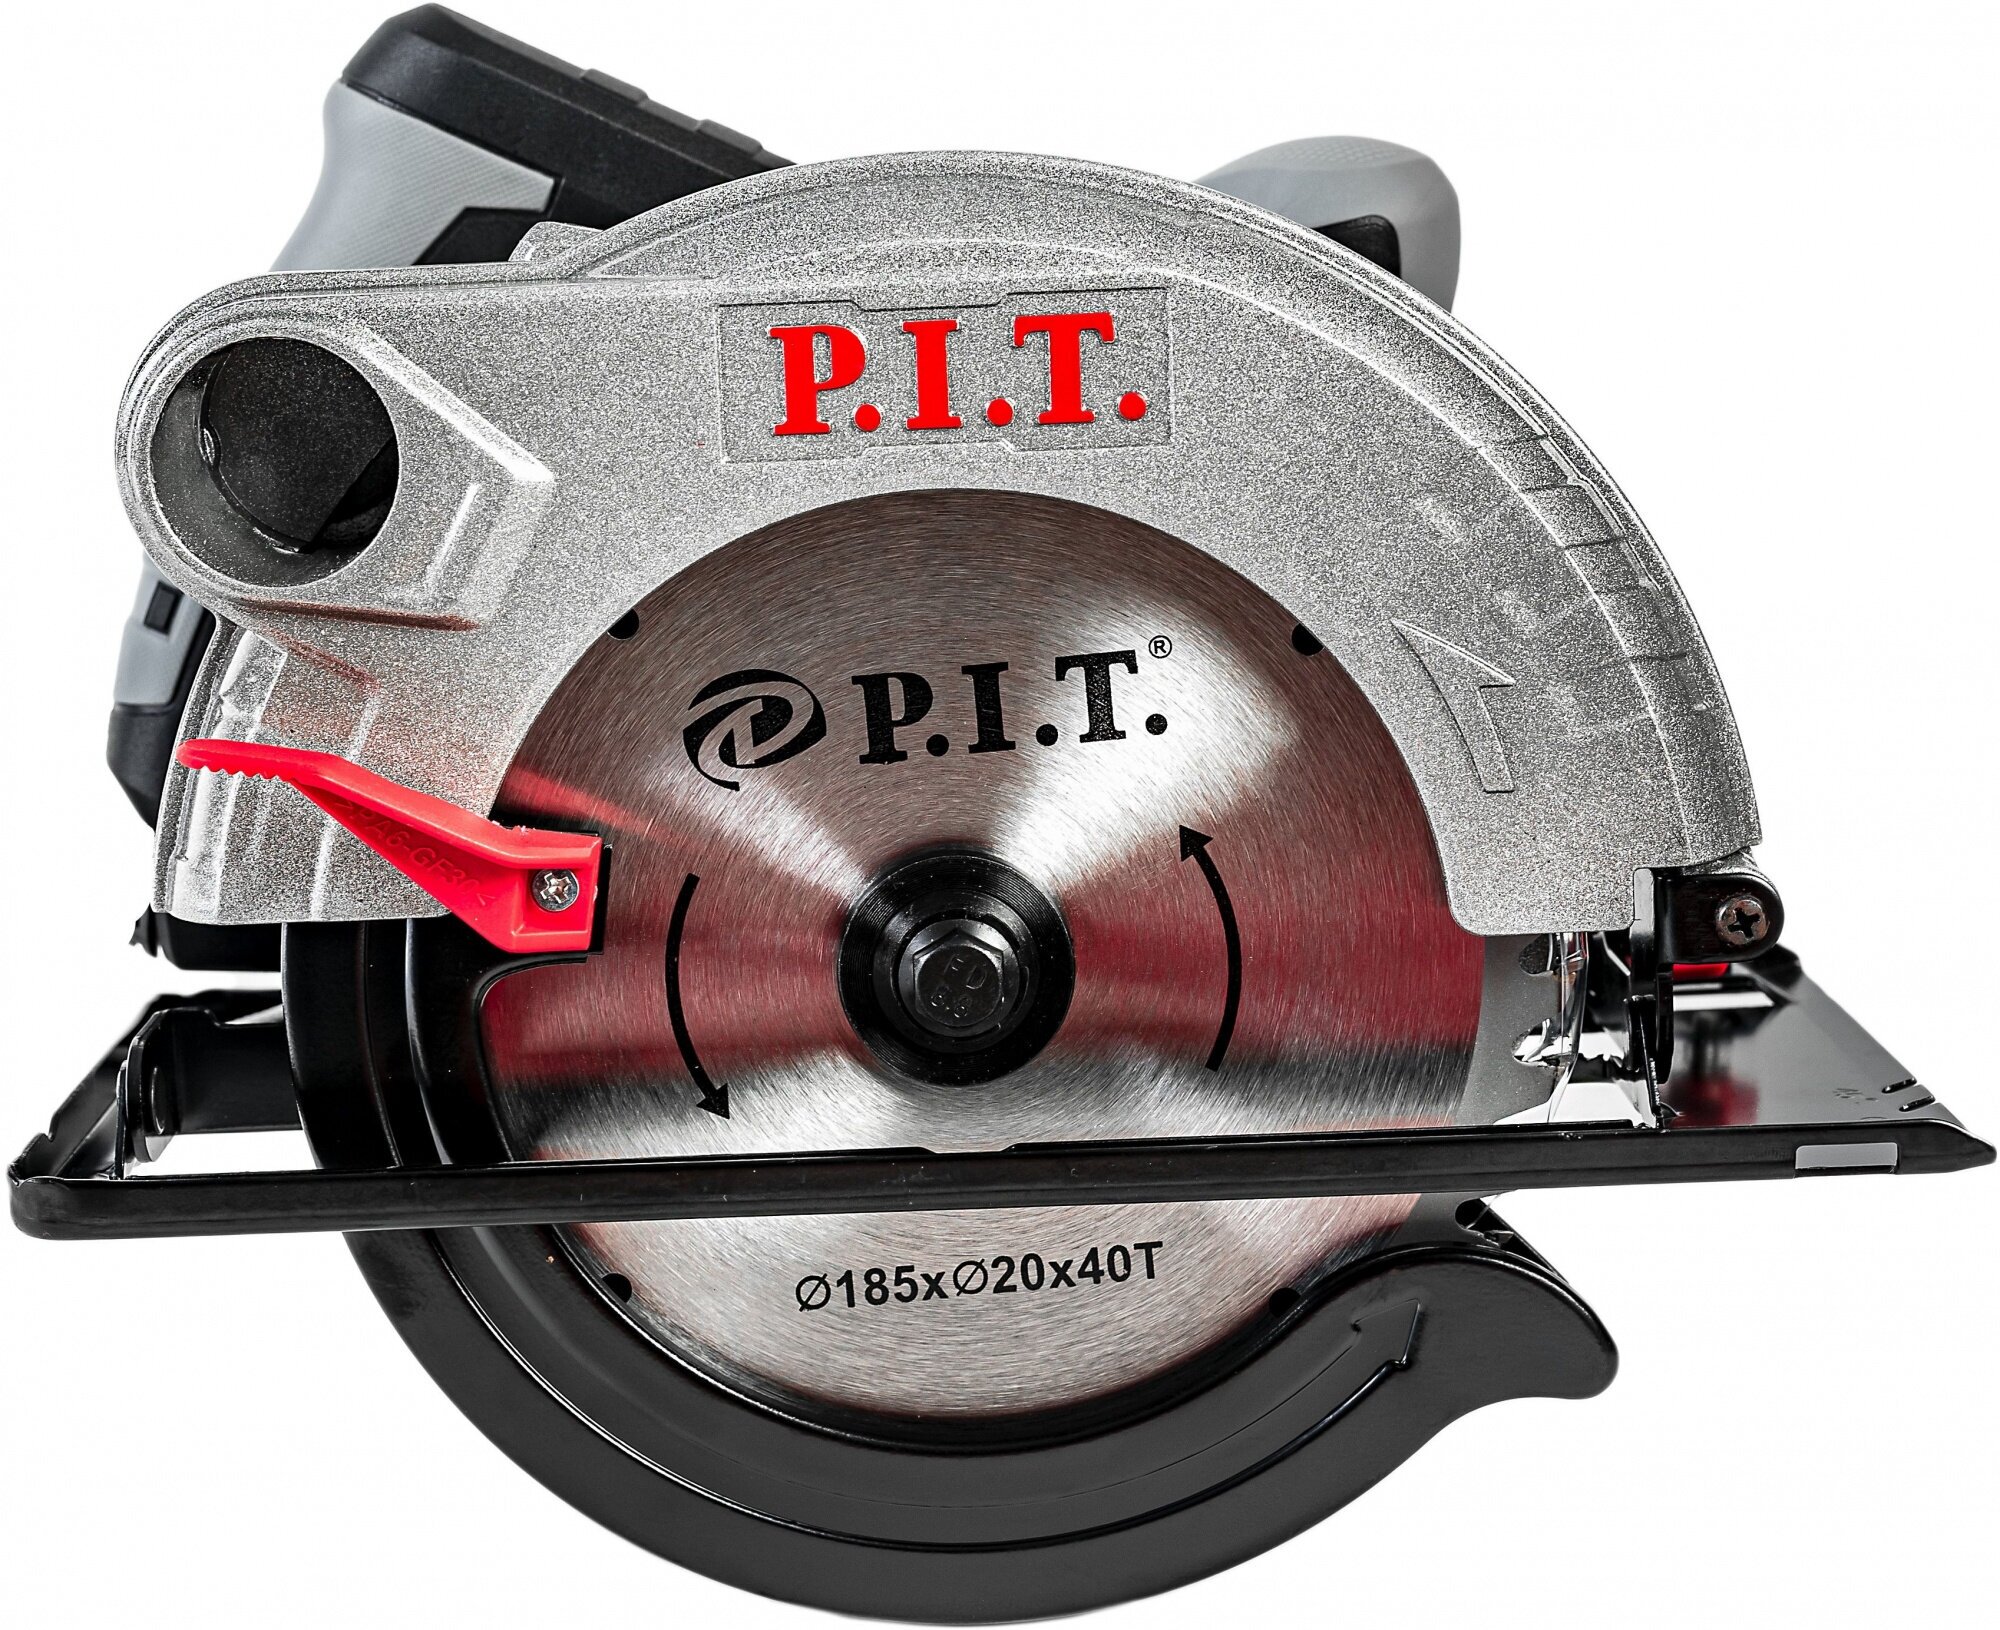 Дисковая пила P.I.T. PKS185-C2, 1300 Вт черный/серый —  в .